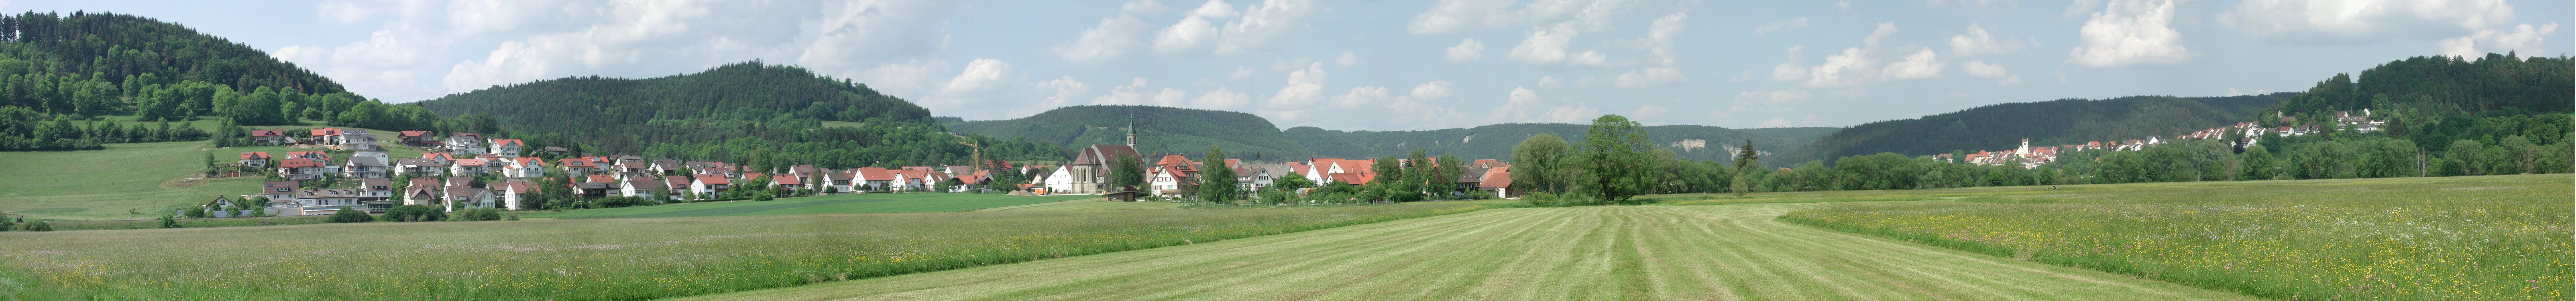 Donauradweg bei Mhlheim-Stetten